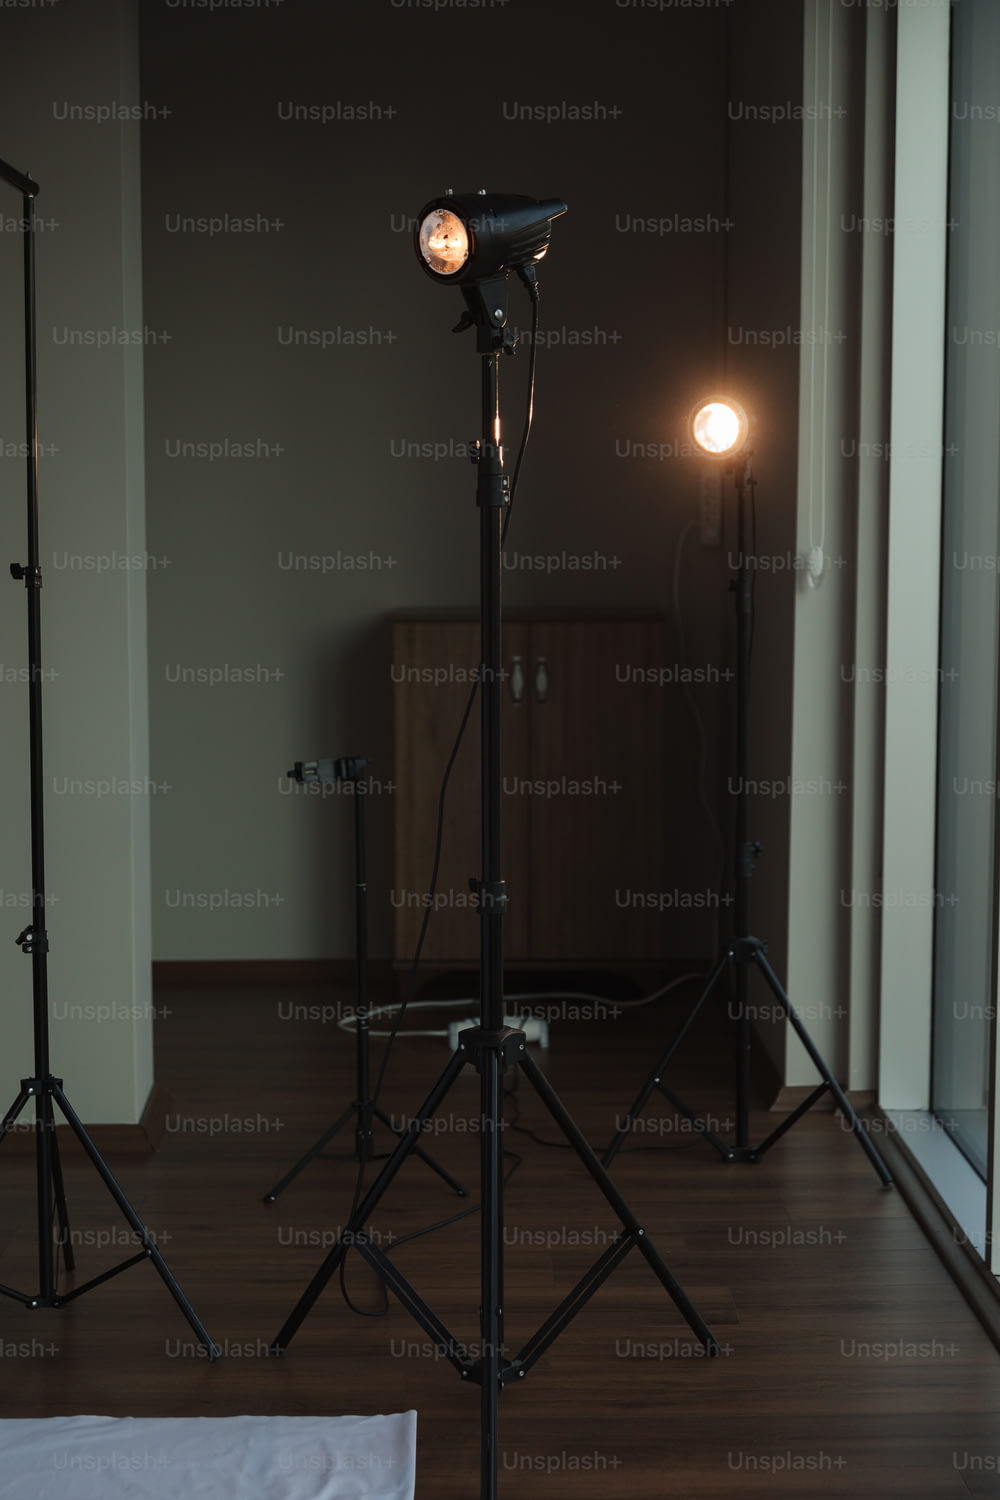 Una habitación con una luz y una cámara en un trípode